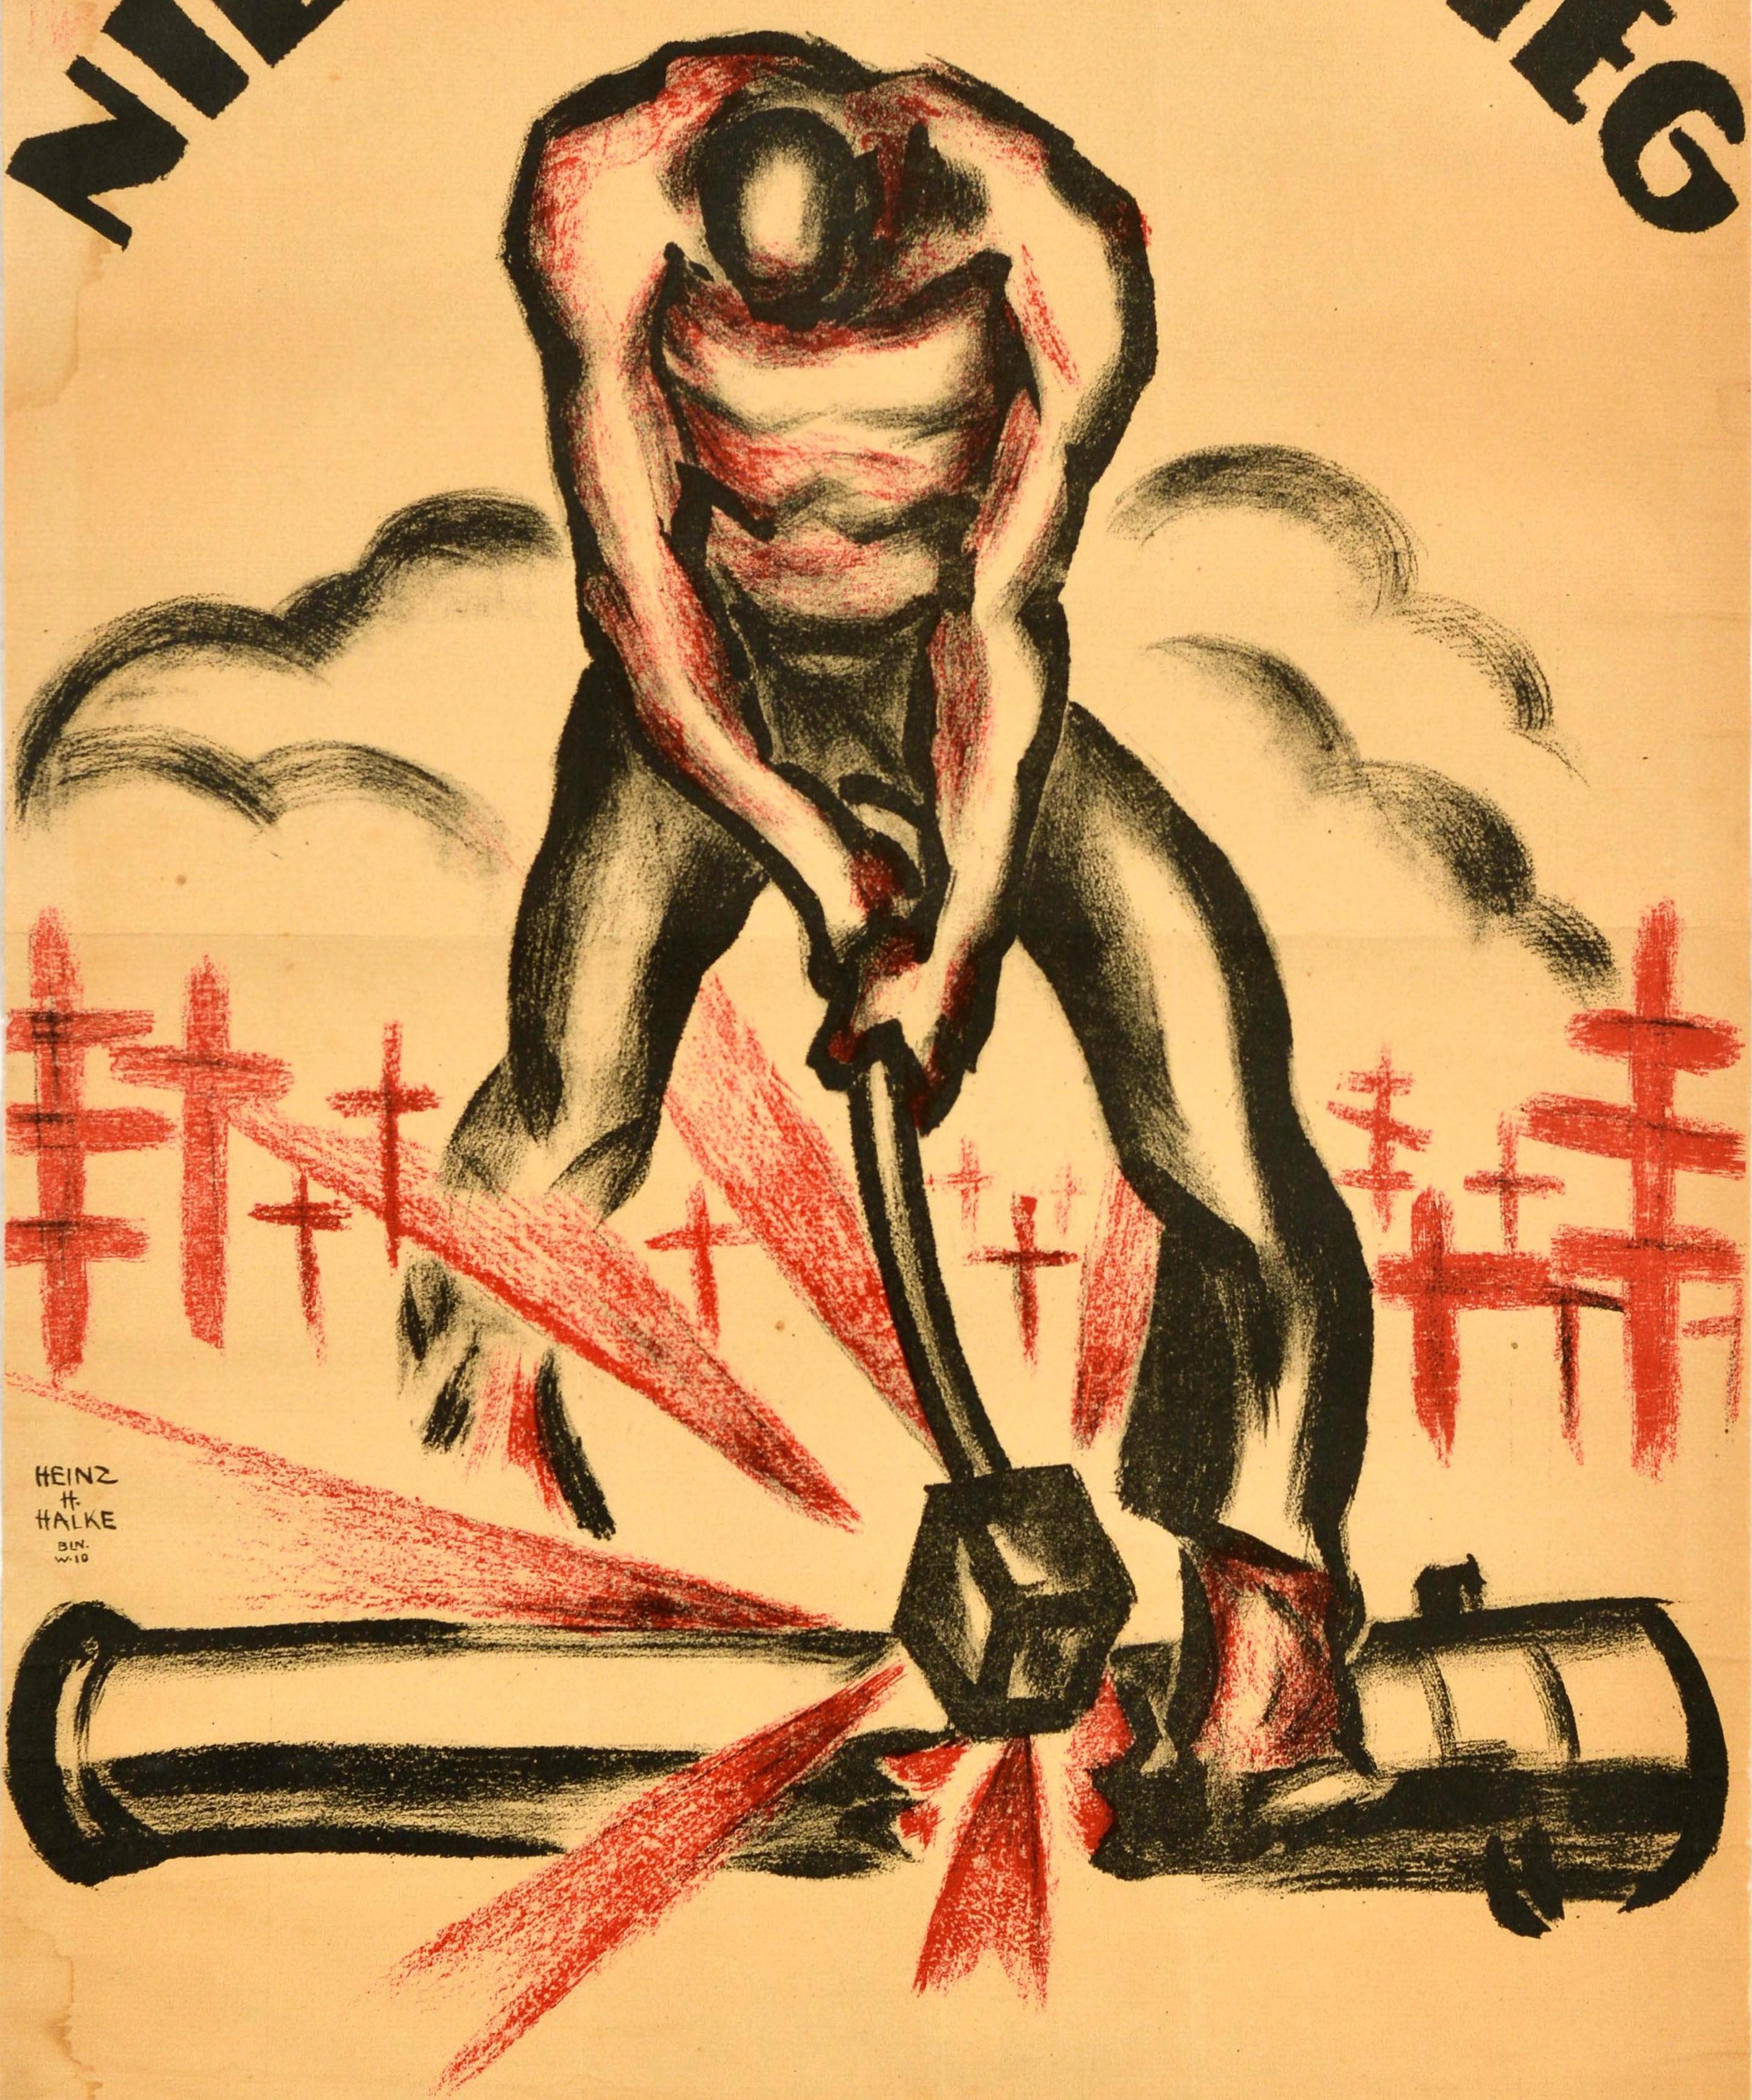 Originales antikes Plakat zum Ersten Weltkrieg - Nie Wieder Krieg - mit einer dynamischen Illustration in Schwarz und Rot, die einen Mann in schwarzer Hose zeigt, der sich bückt und eine Kanone zerschlägt, wobei die roten Schläge vor roten Kreuzen